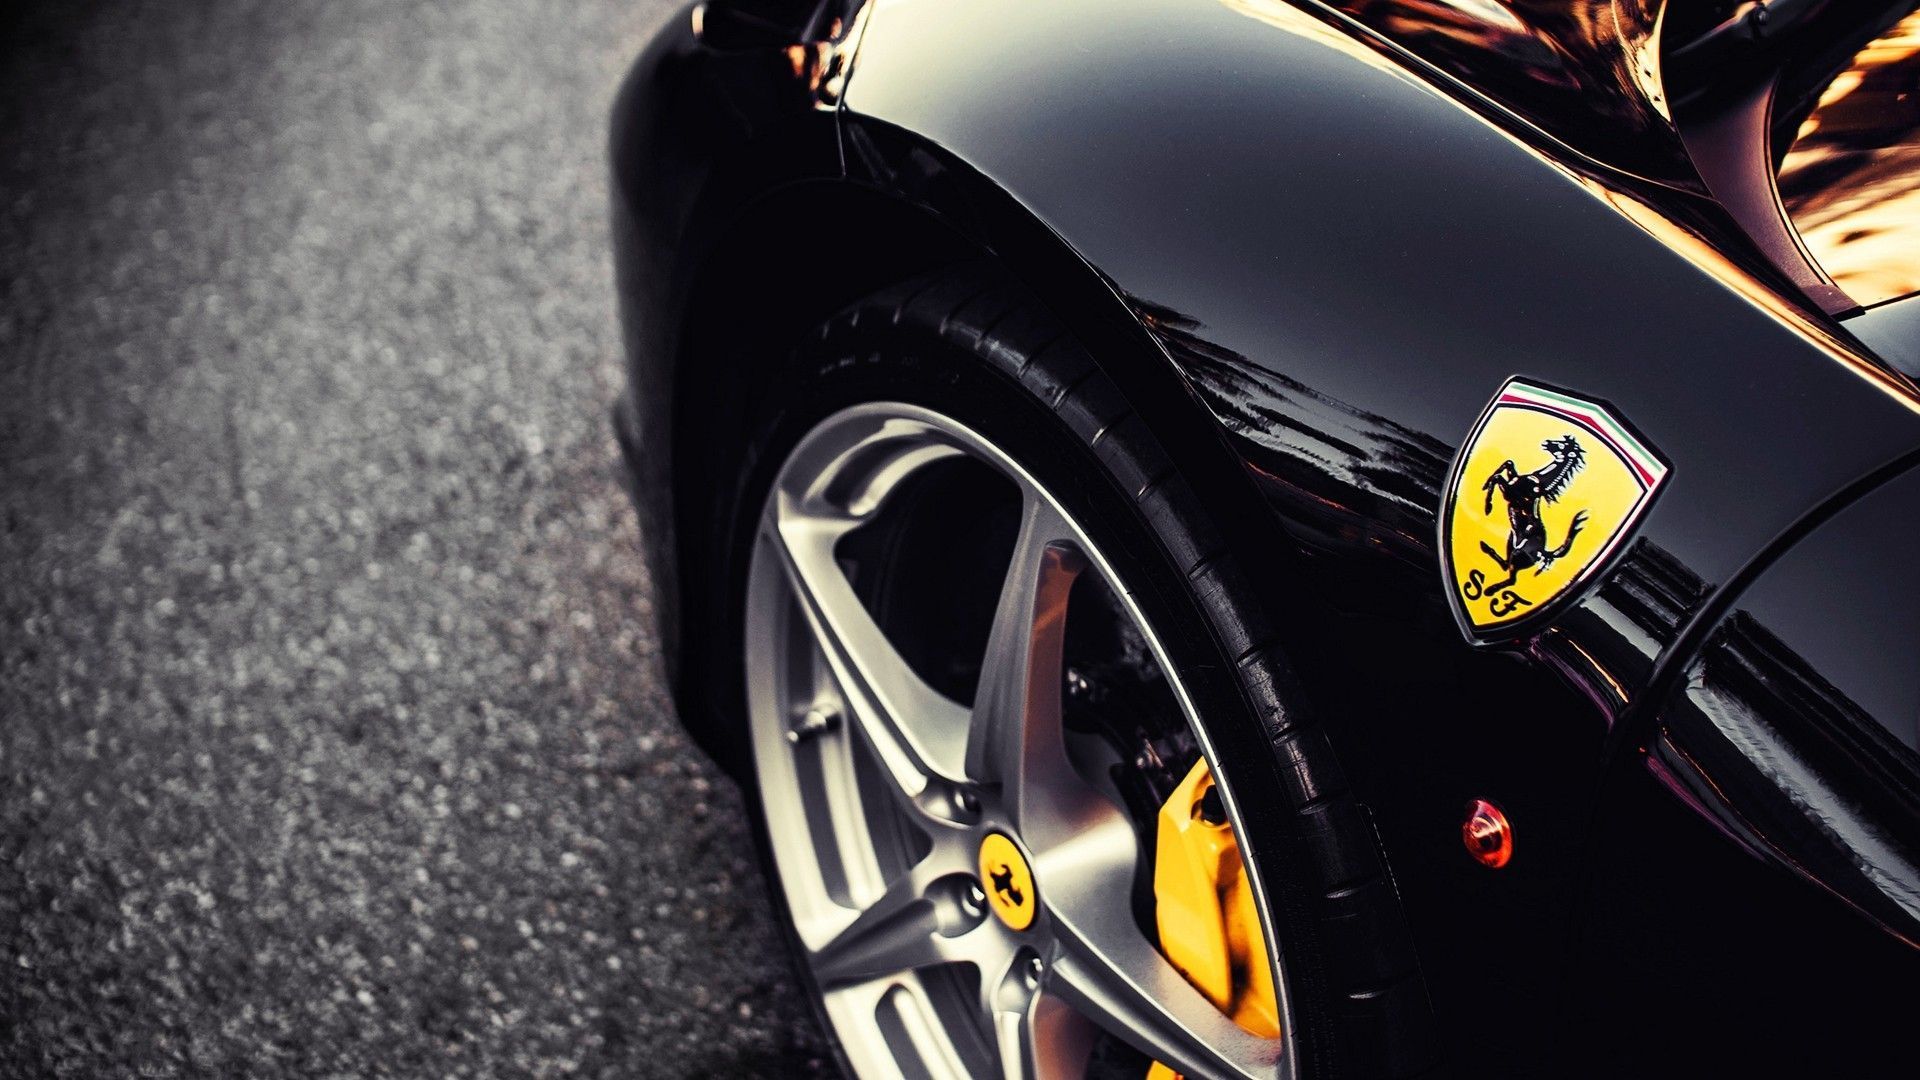 Picture 2016, Ferrari Emblem HD 1080p Wallpapers Download - Cars ...